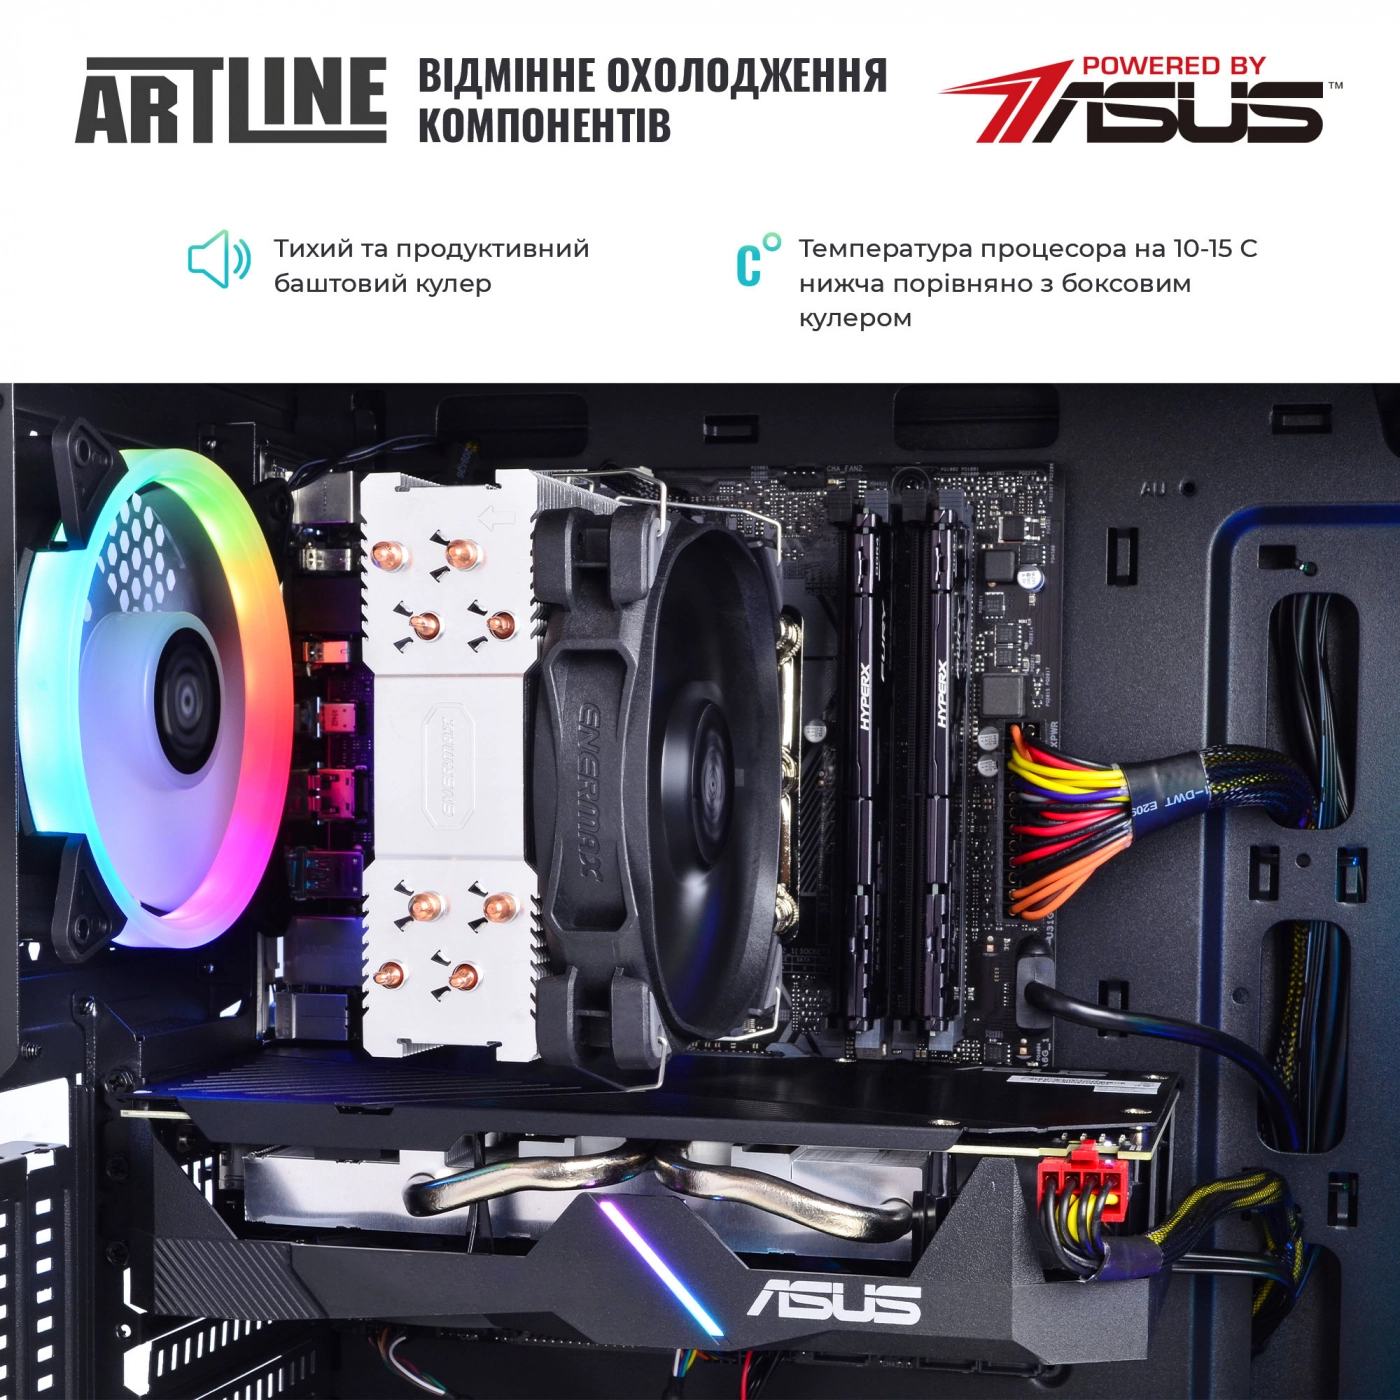 Купить Компьютер ARTLINE Gaming X67v21 - фото 3